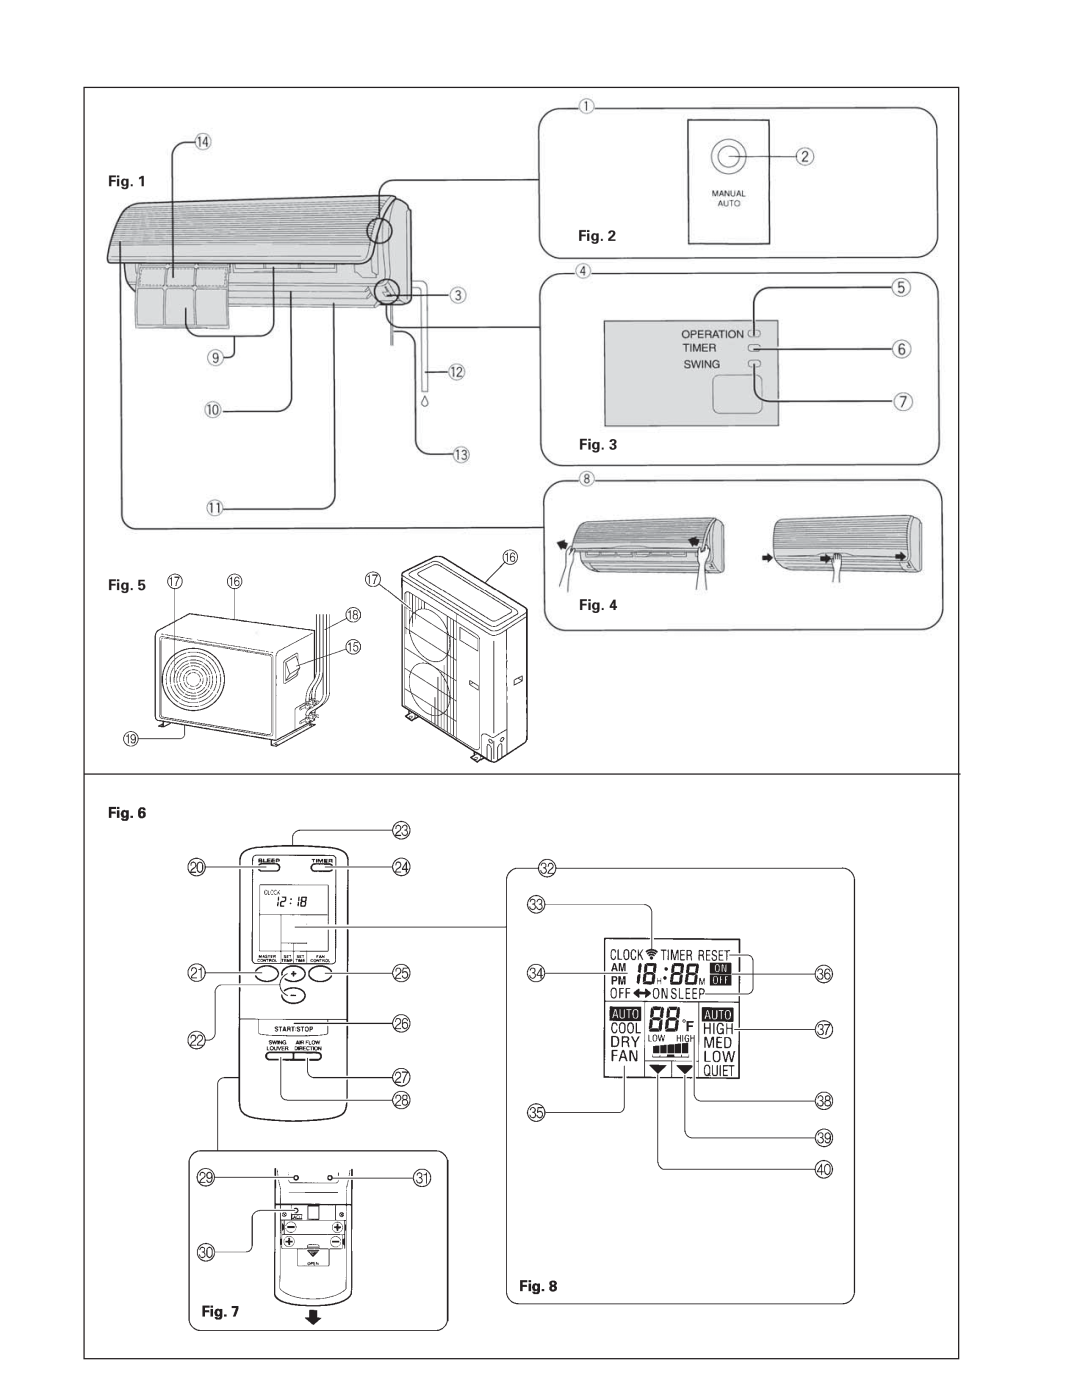 Fujitsu AOU36T, ASU18T, Room Air Conditioner Multi Split Type (3 rooms) Fig. Fig. Fig. Fig. Fig. Fig. Fig. Fig 